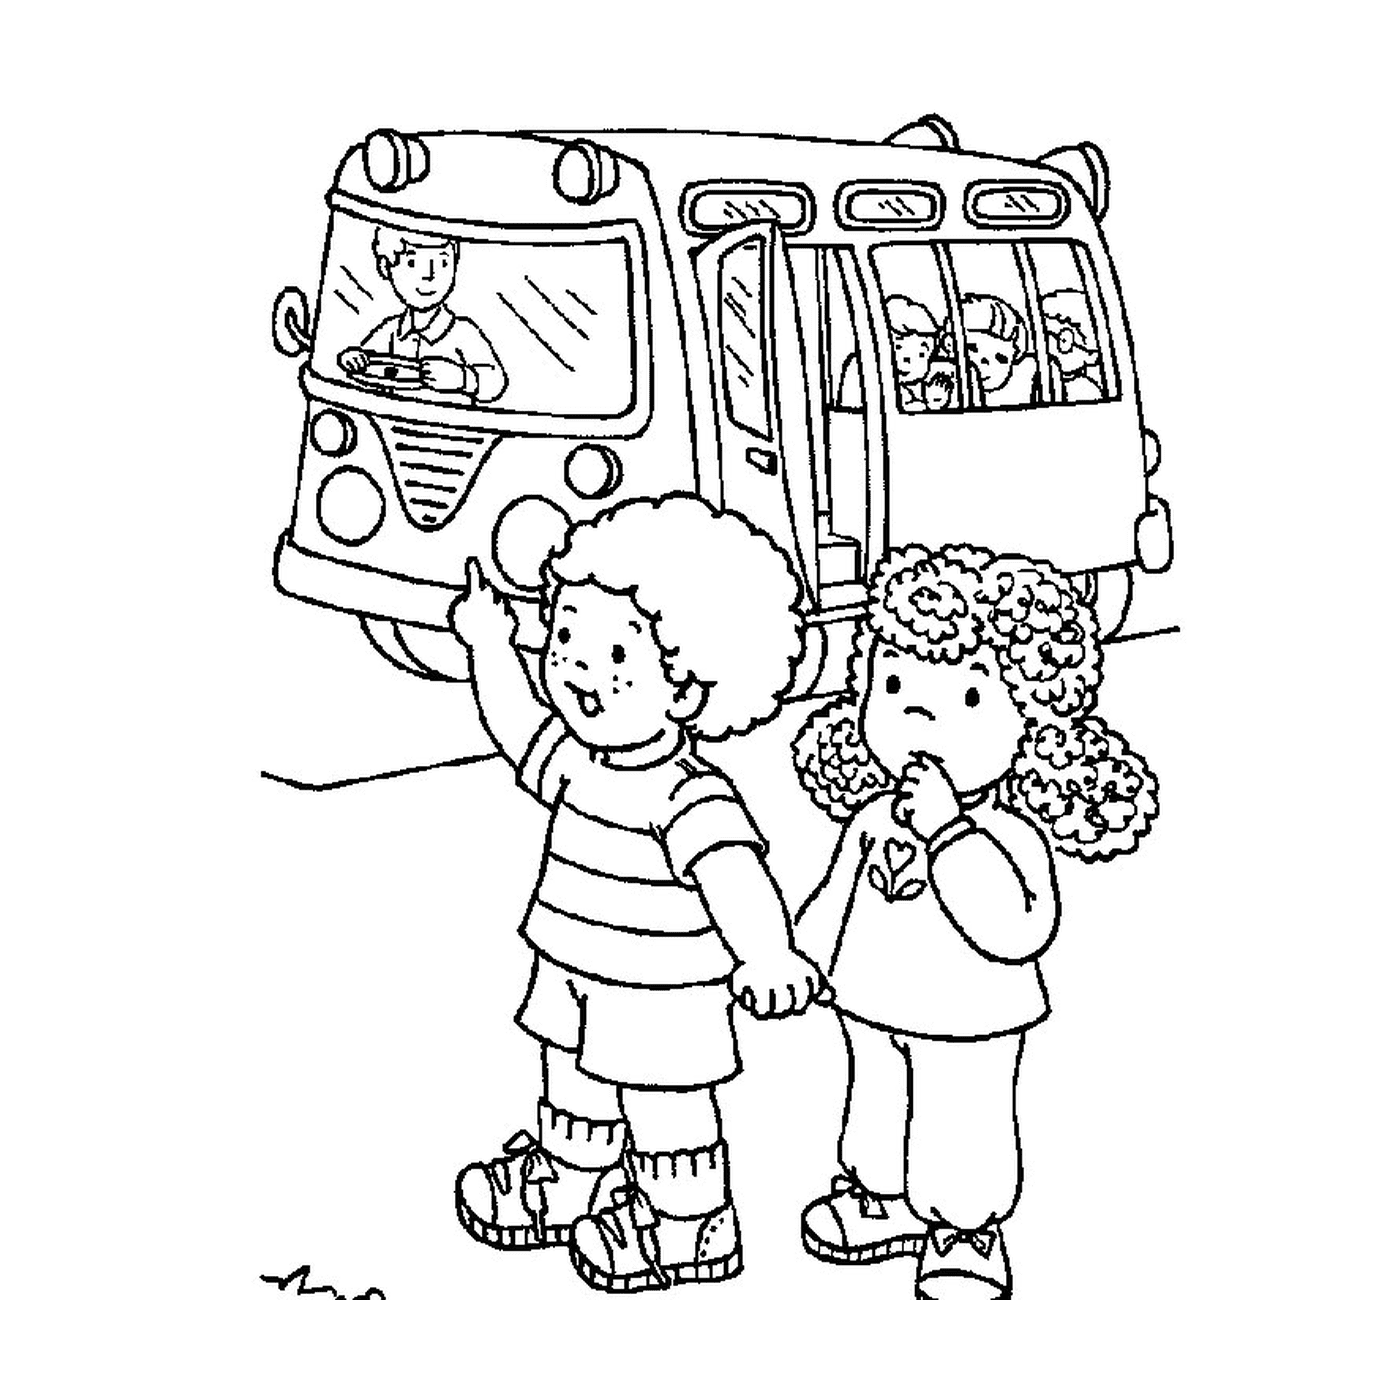  2名儿童在一辆校车前 